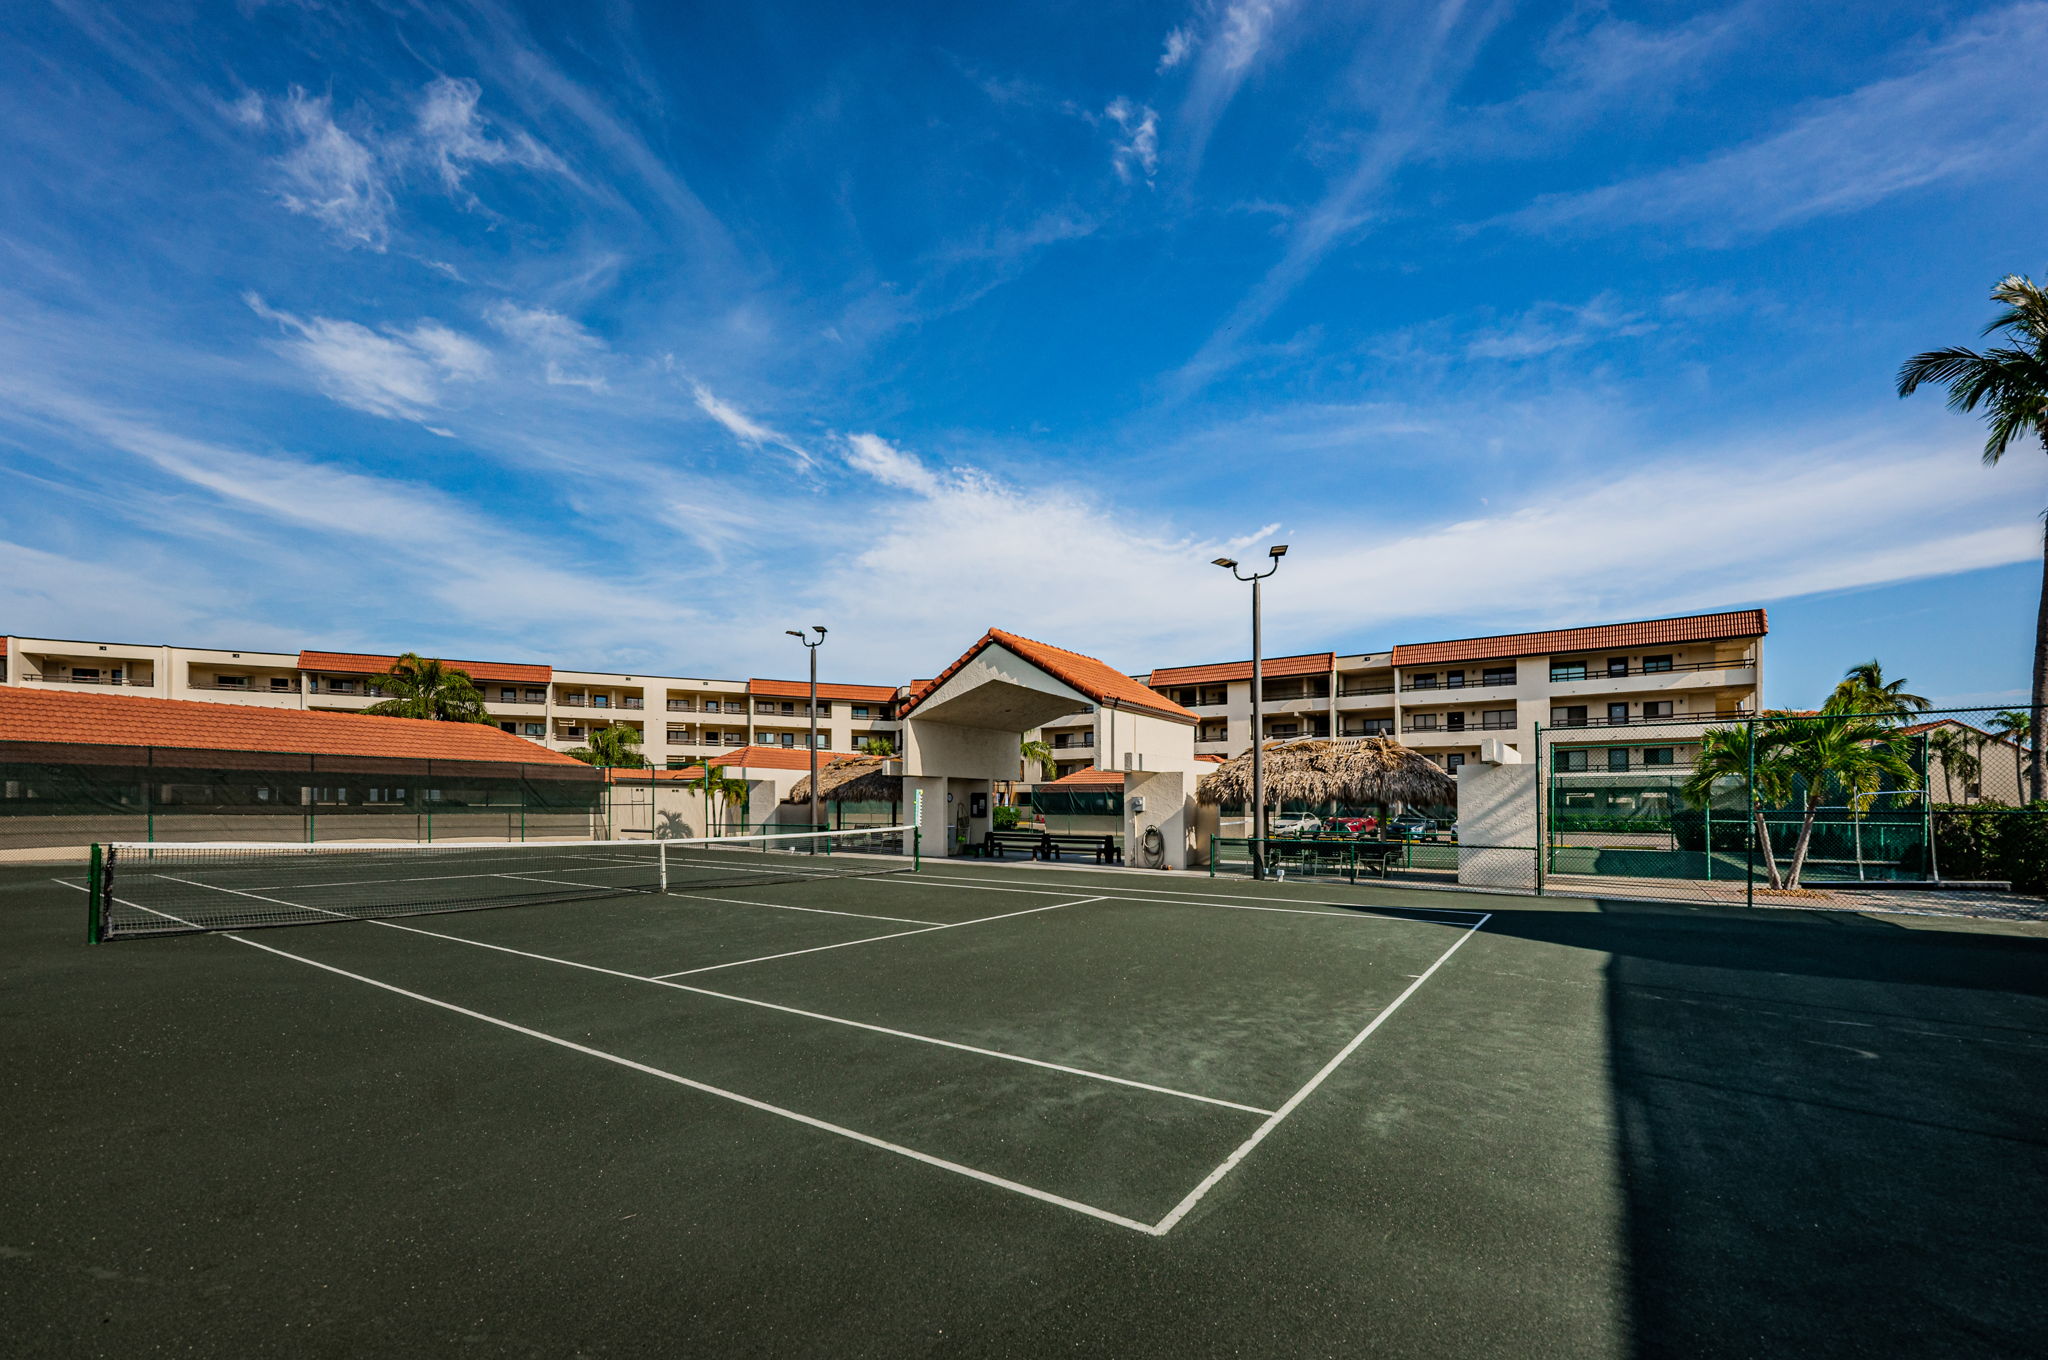 101-Tennis Court2